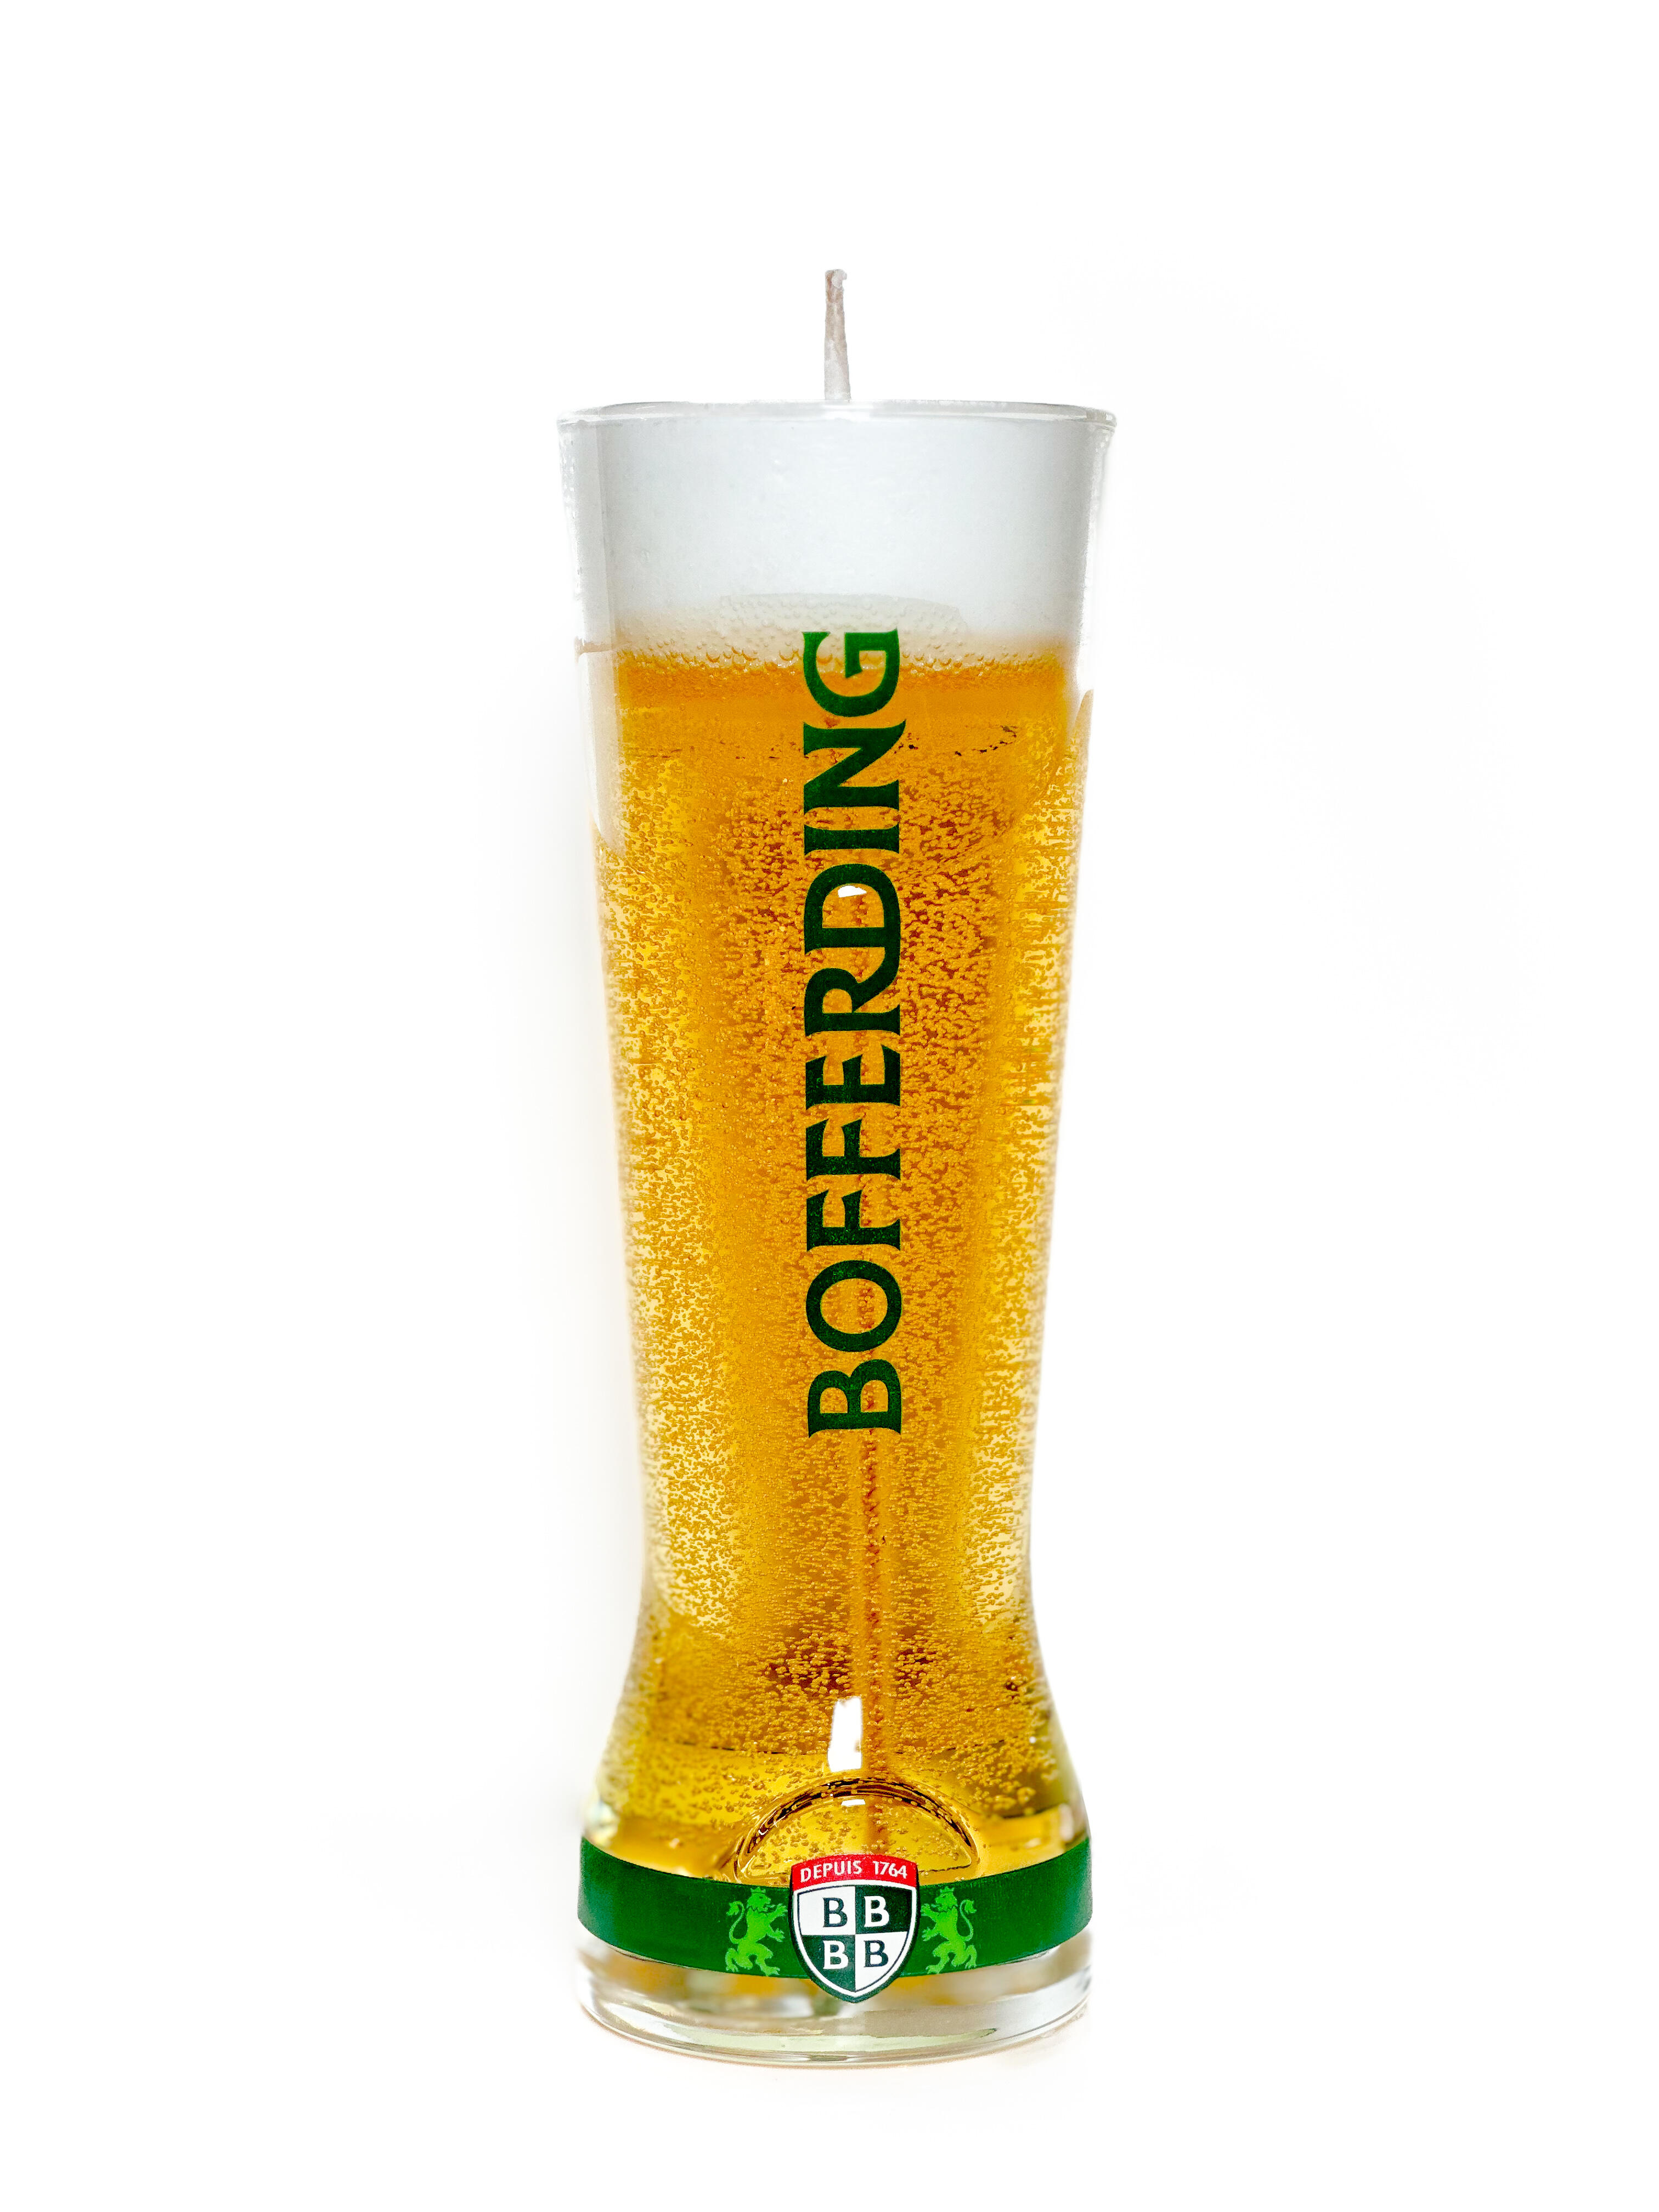 Bierkerze "Flûte" - Bofferding